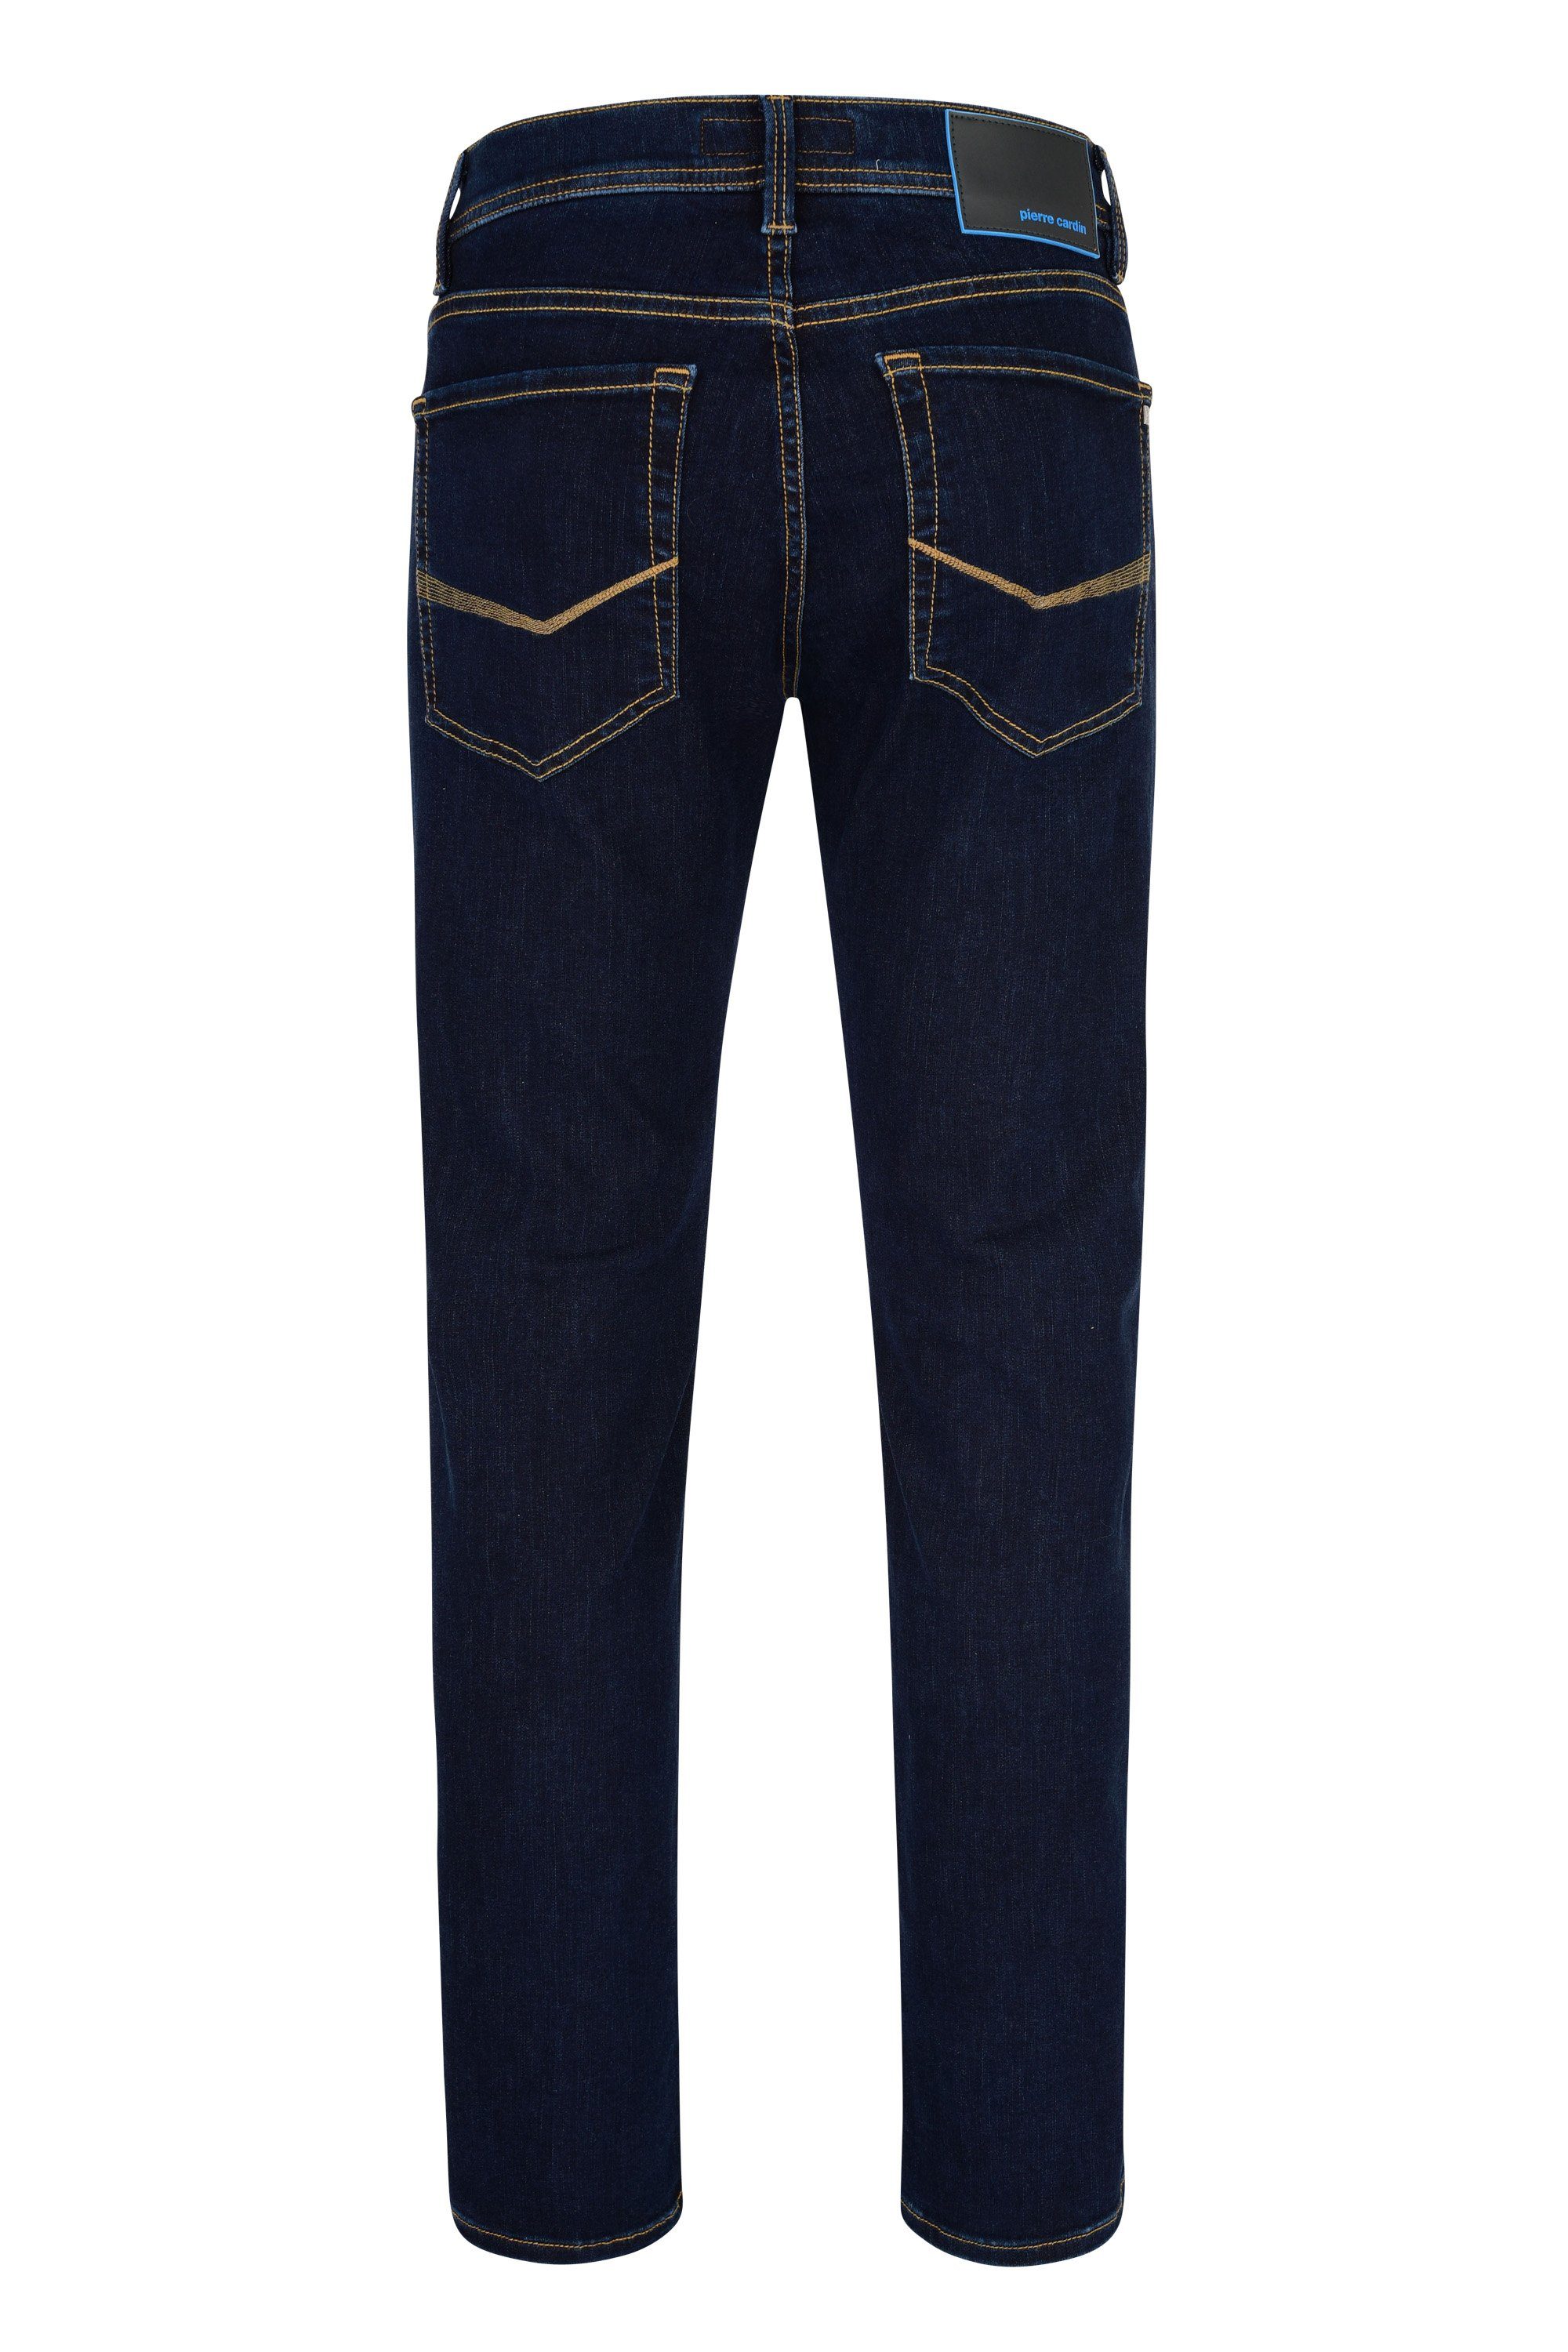 Pierre Cardin 5-Pocket-Jeans PIERRE CARDIN dark LYON 8880.89 blue FUTUREFLEX 3451